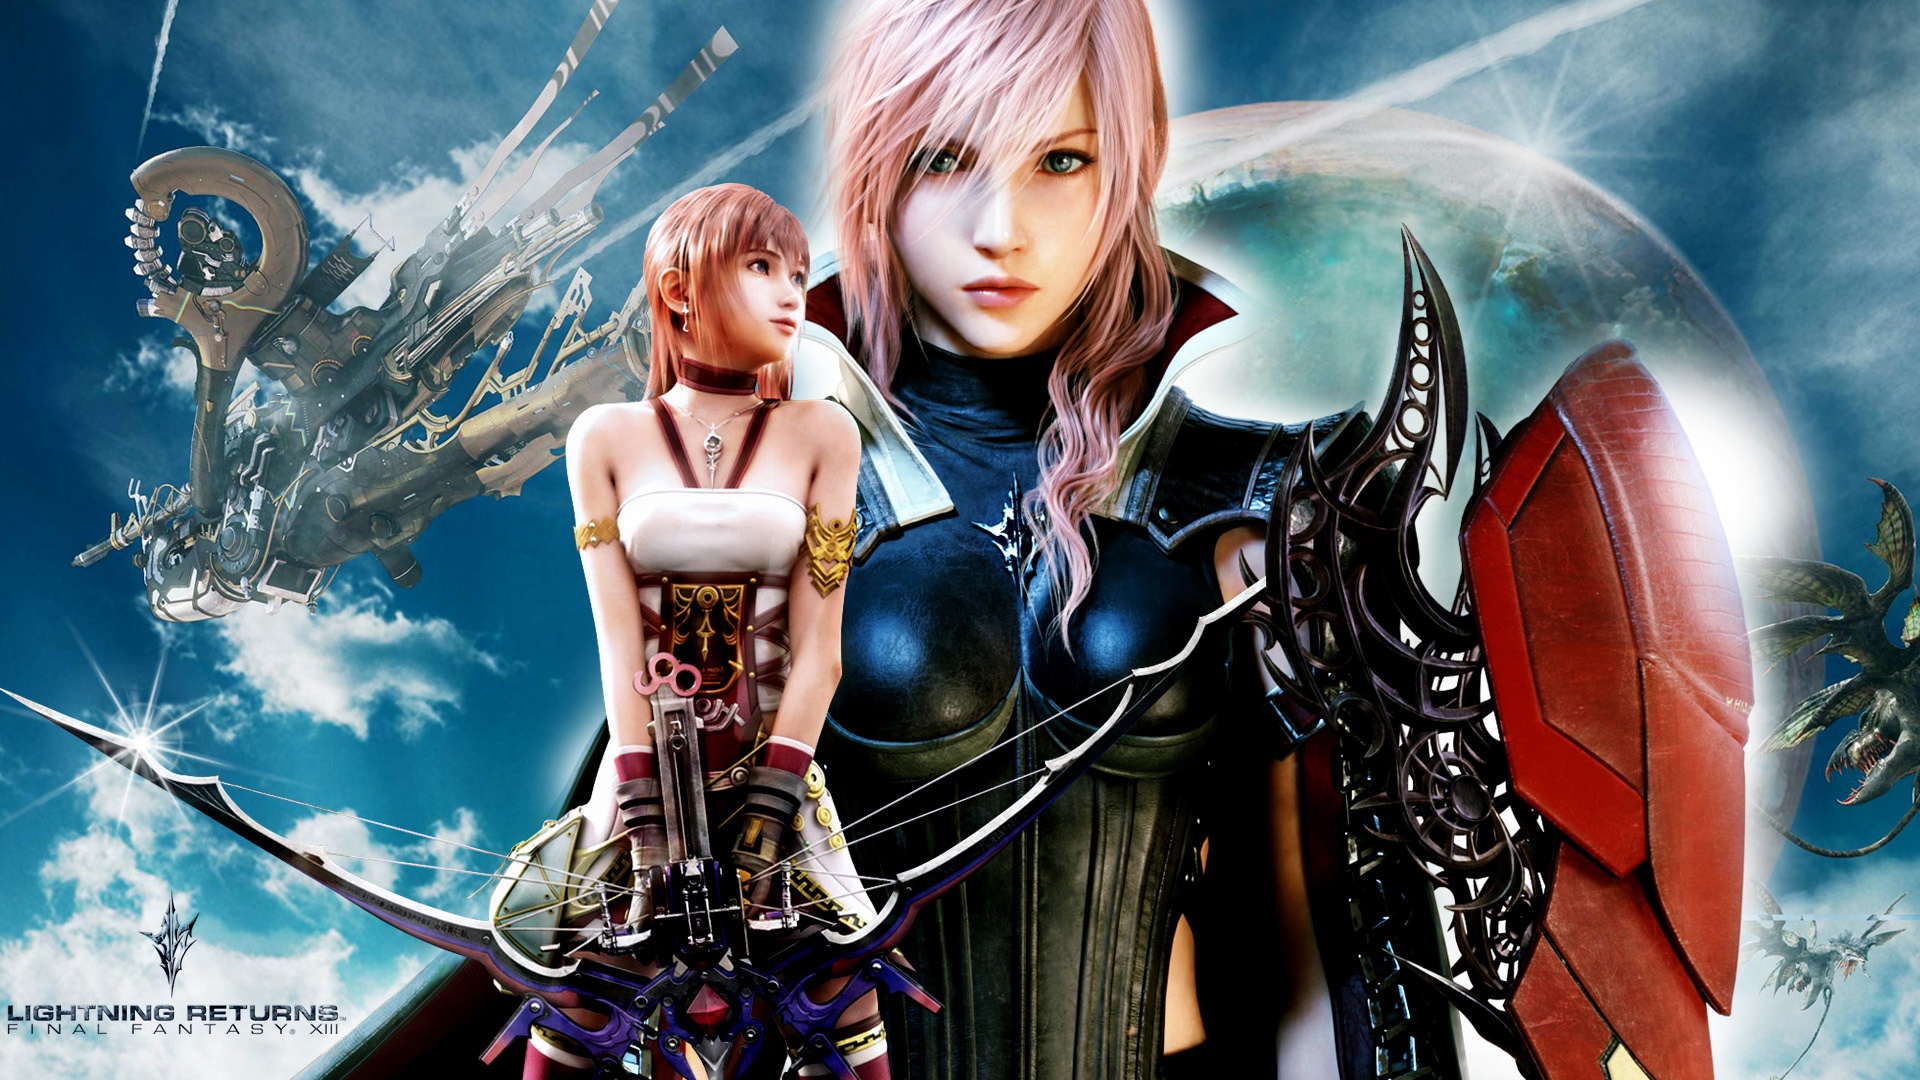 Lightning Returns Final Fantasy Xiii Wallpaper HD